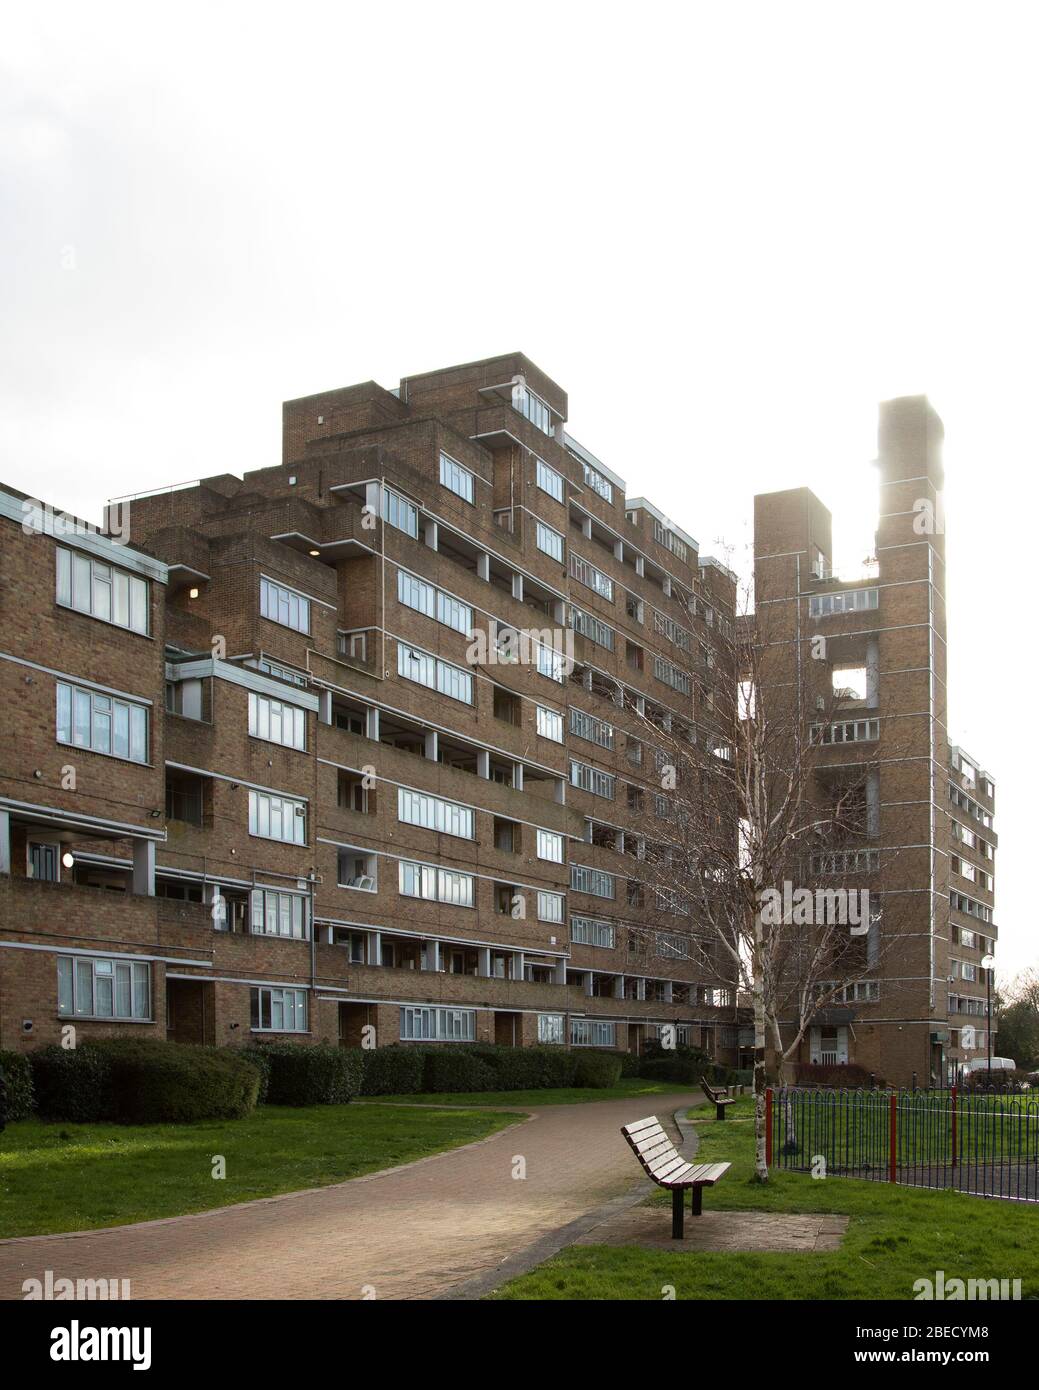 Dawson's Heights, un grand immeuble social conçu par Kate Macintosh et construit entre 1964 et 1972 dans le sud-est de Londres. Banque D'Images